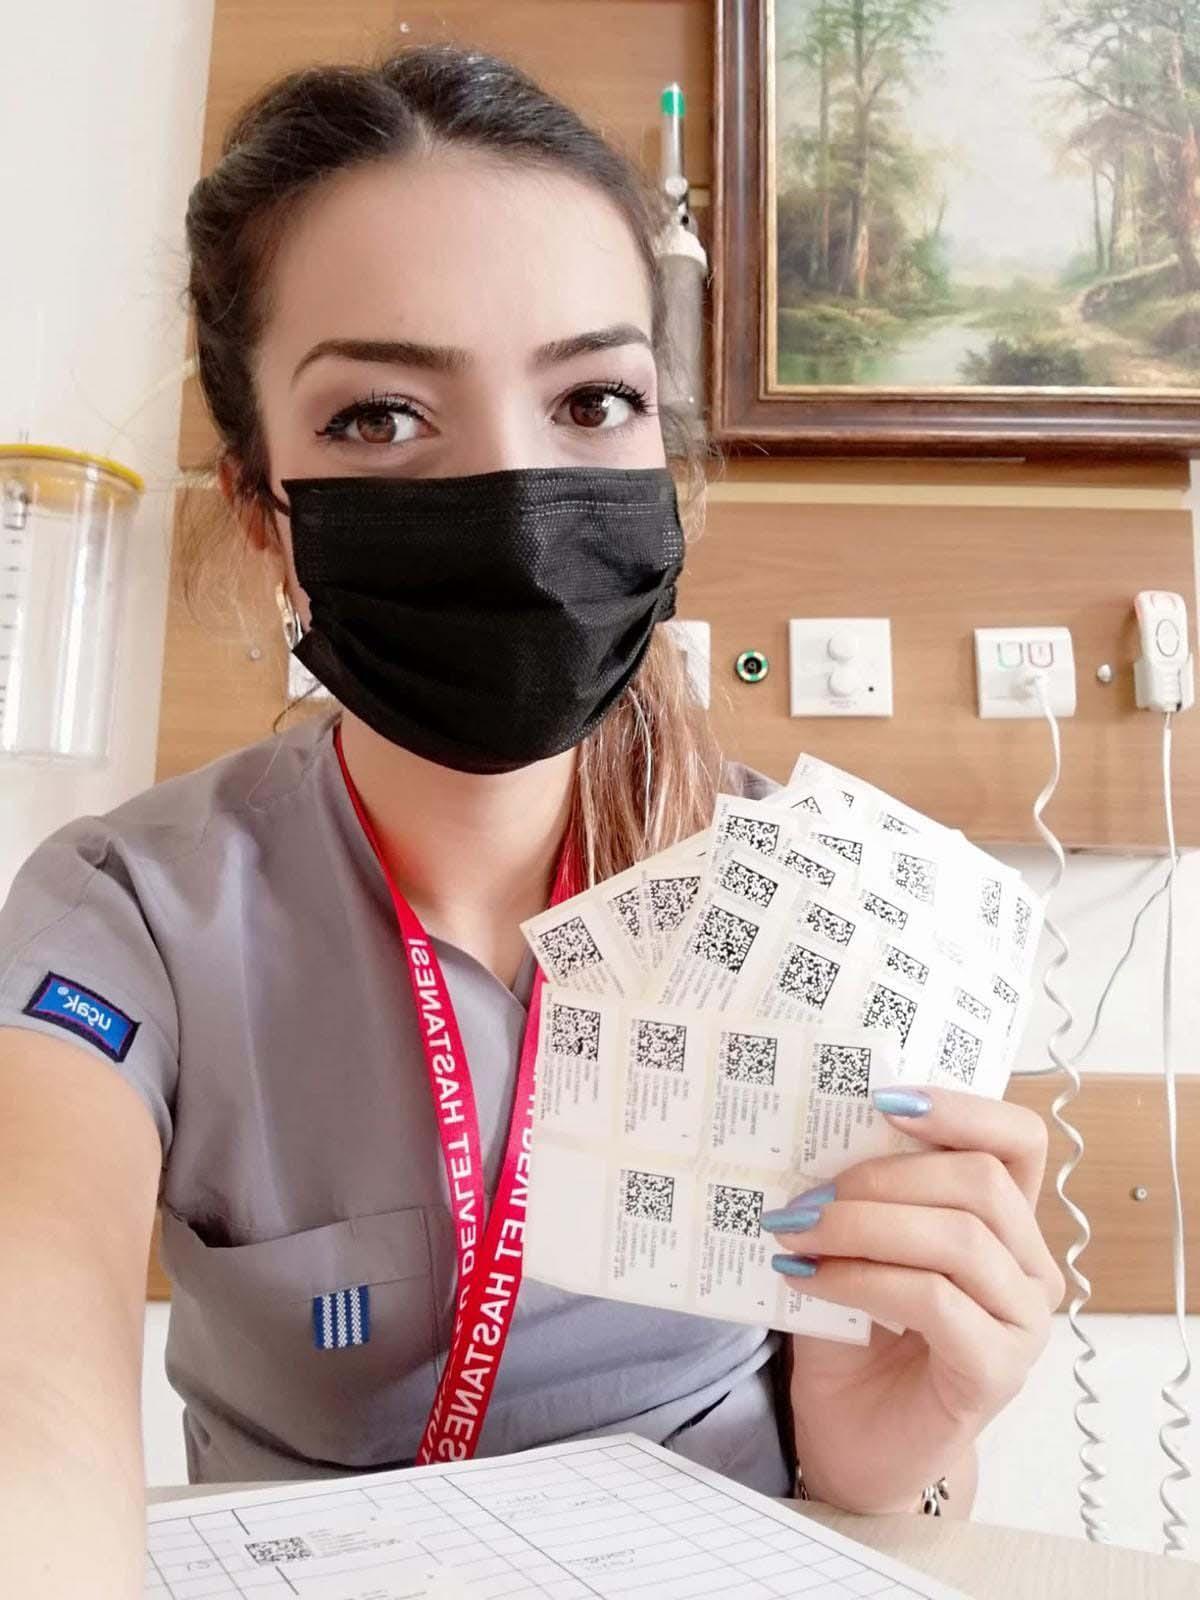 Bir günde 444 aşı yapan Dilan Hemşireye Başarı Belgesi